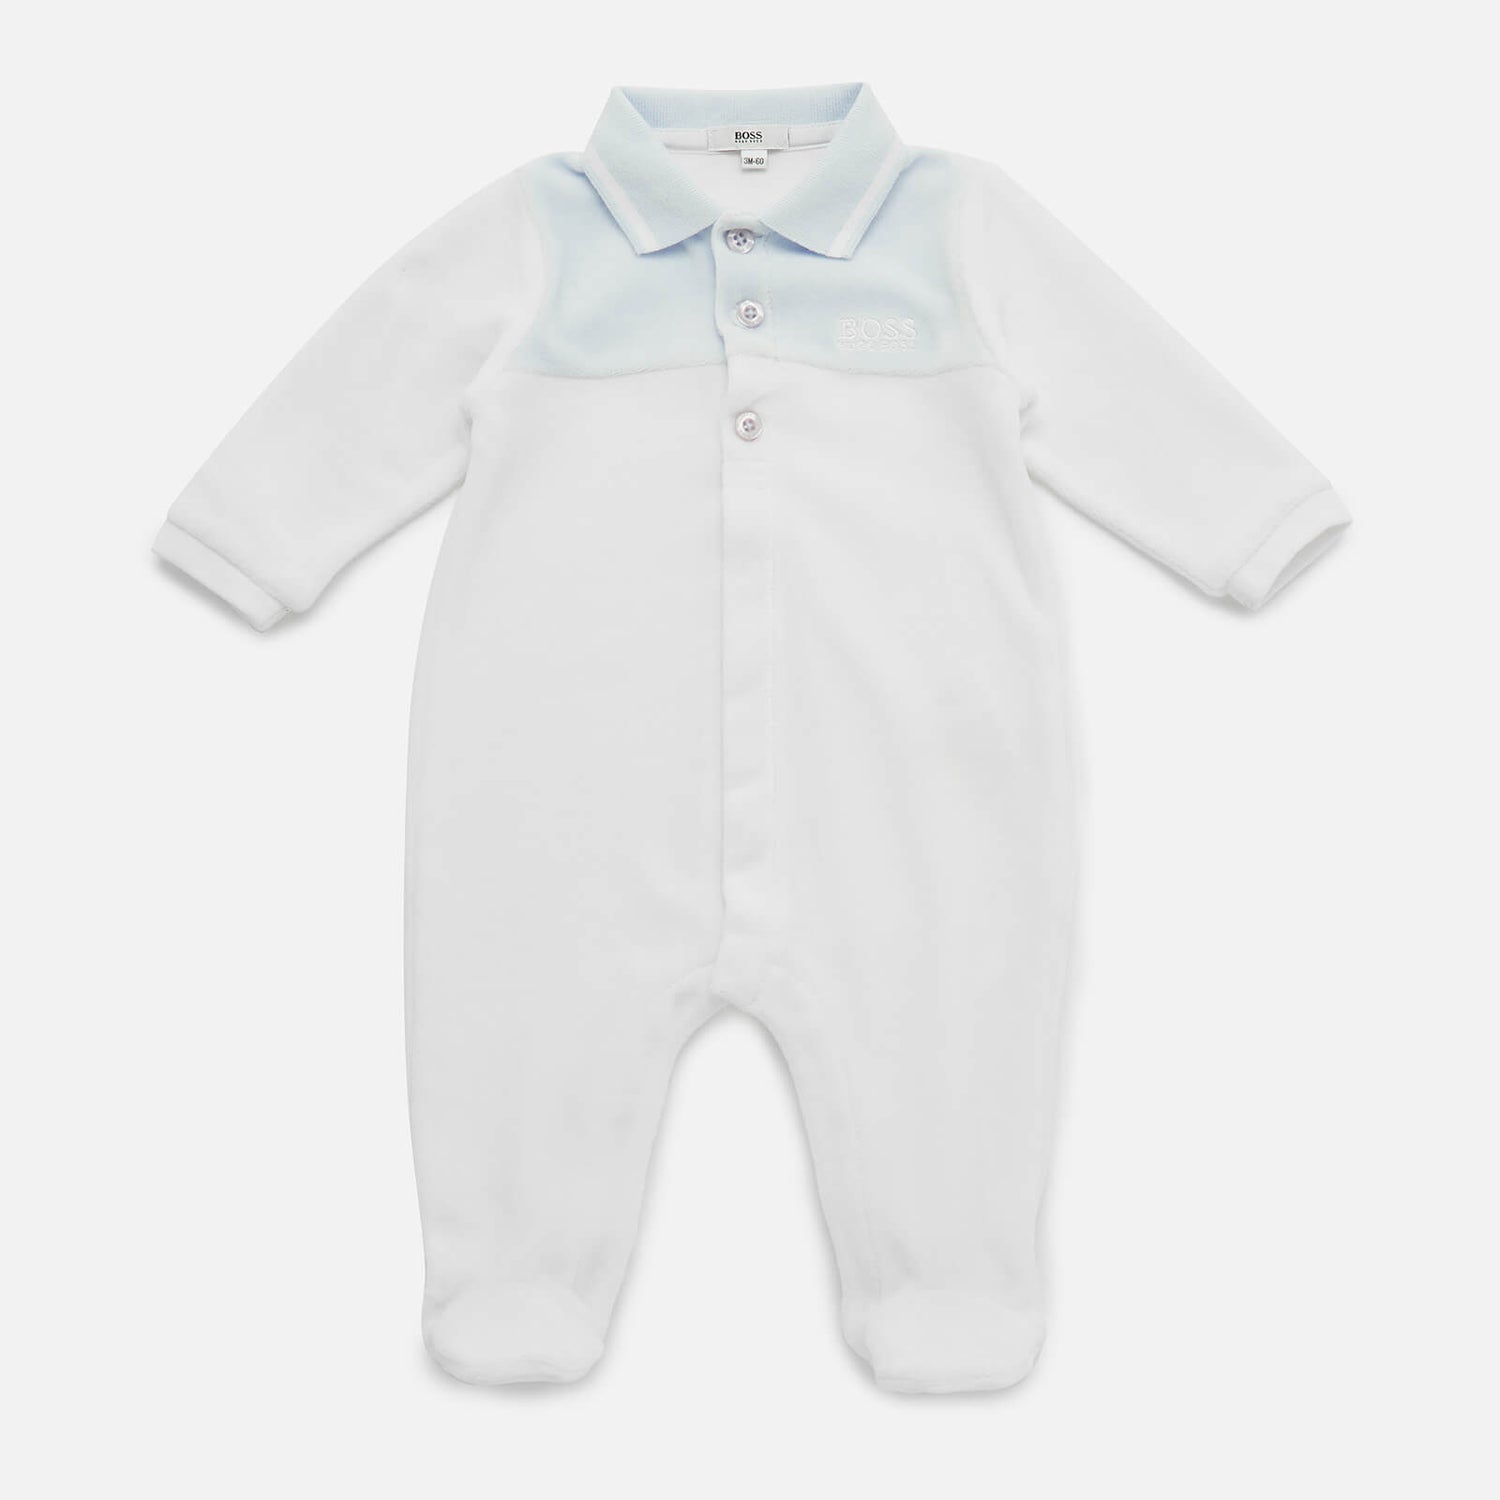 Hugo Boss Baby Sleepsuit Pyjamas - White | TheHut.com